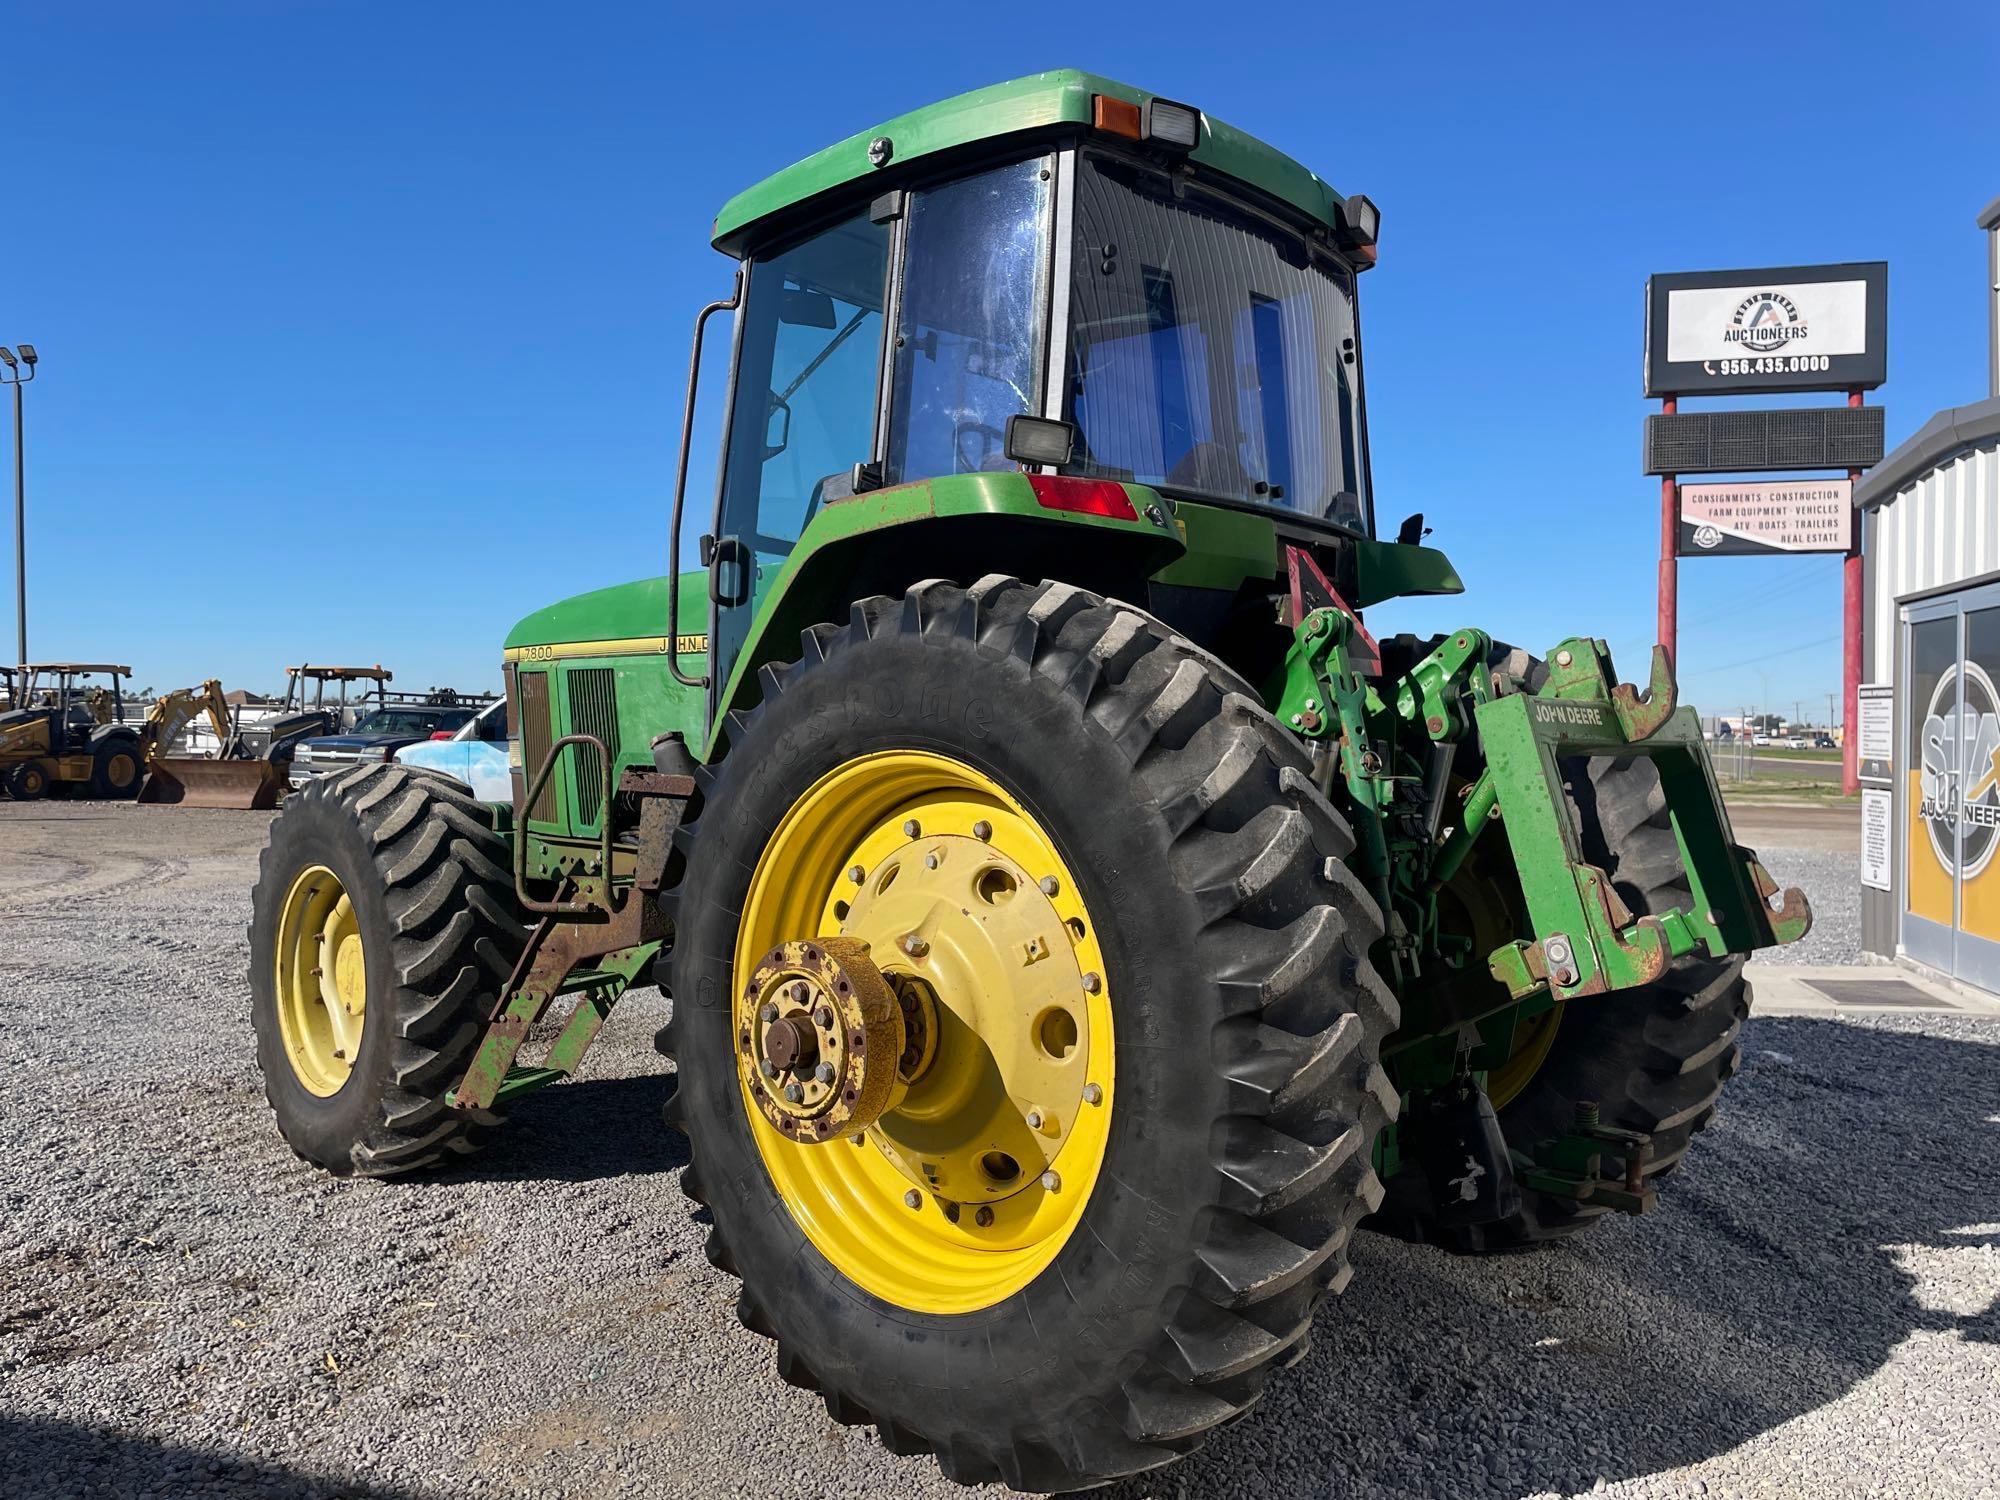 John Deere 7800 Farm Tractor